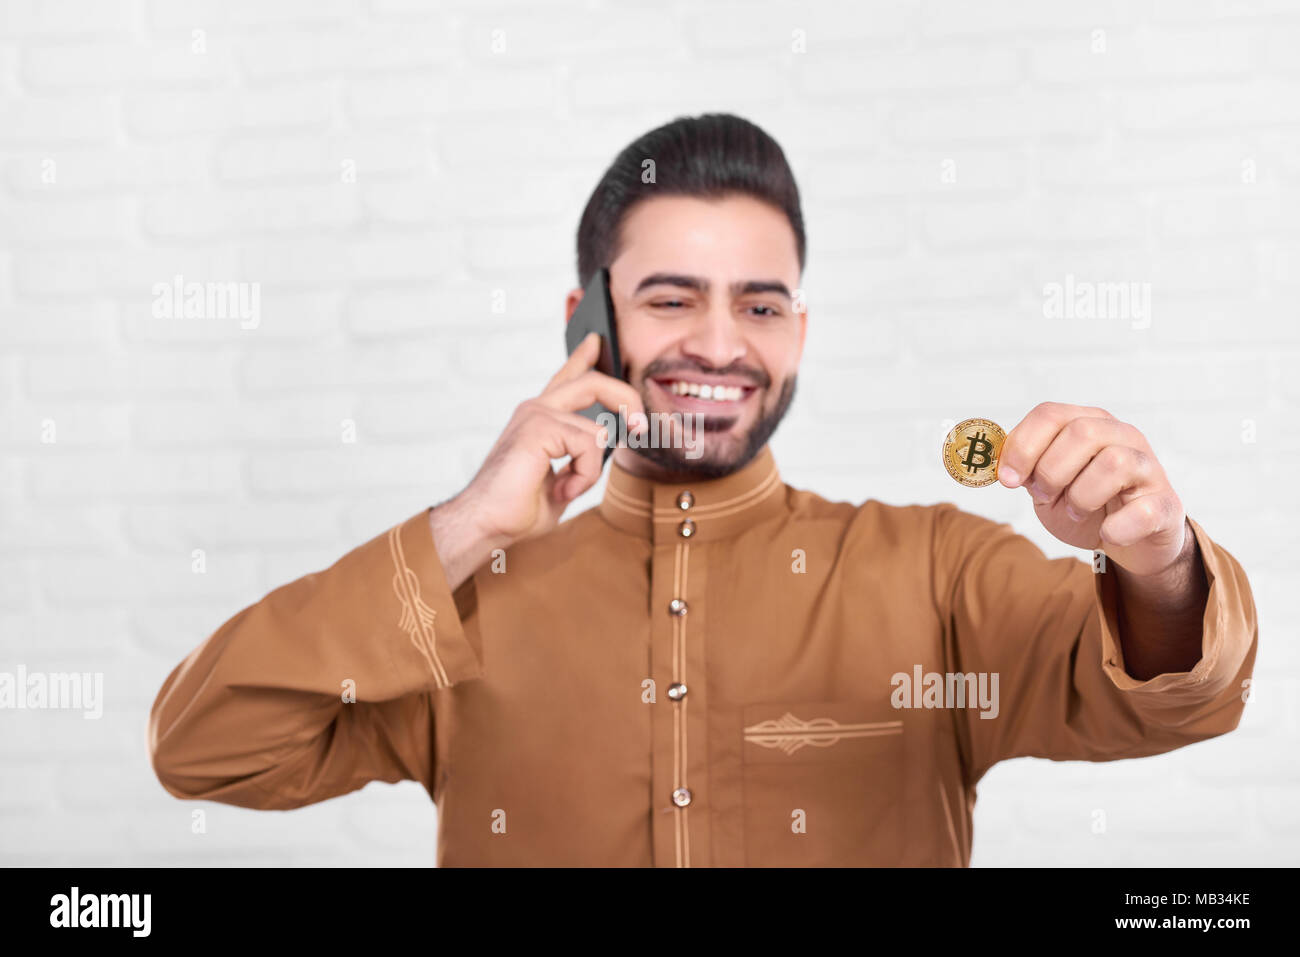 Smiling businessman arabe golden garde. bitcoin En même temps il parle sur son téléphone mobile. Homme porte une chemise marron avec un motif. Close-up a été faite sur le fond blanc. Banque D'Images